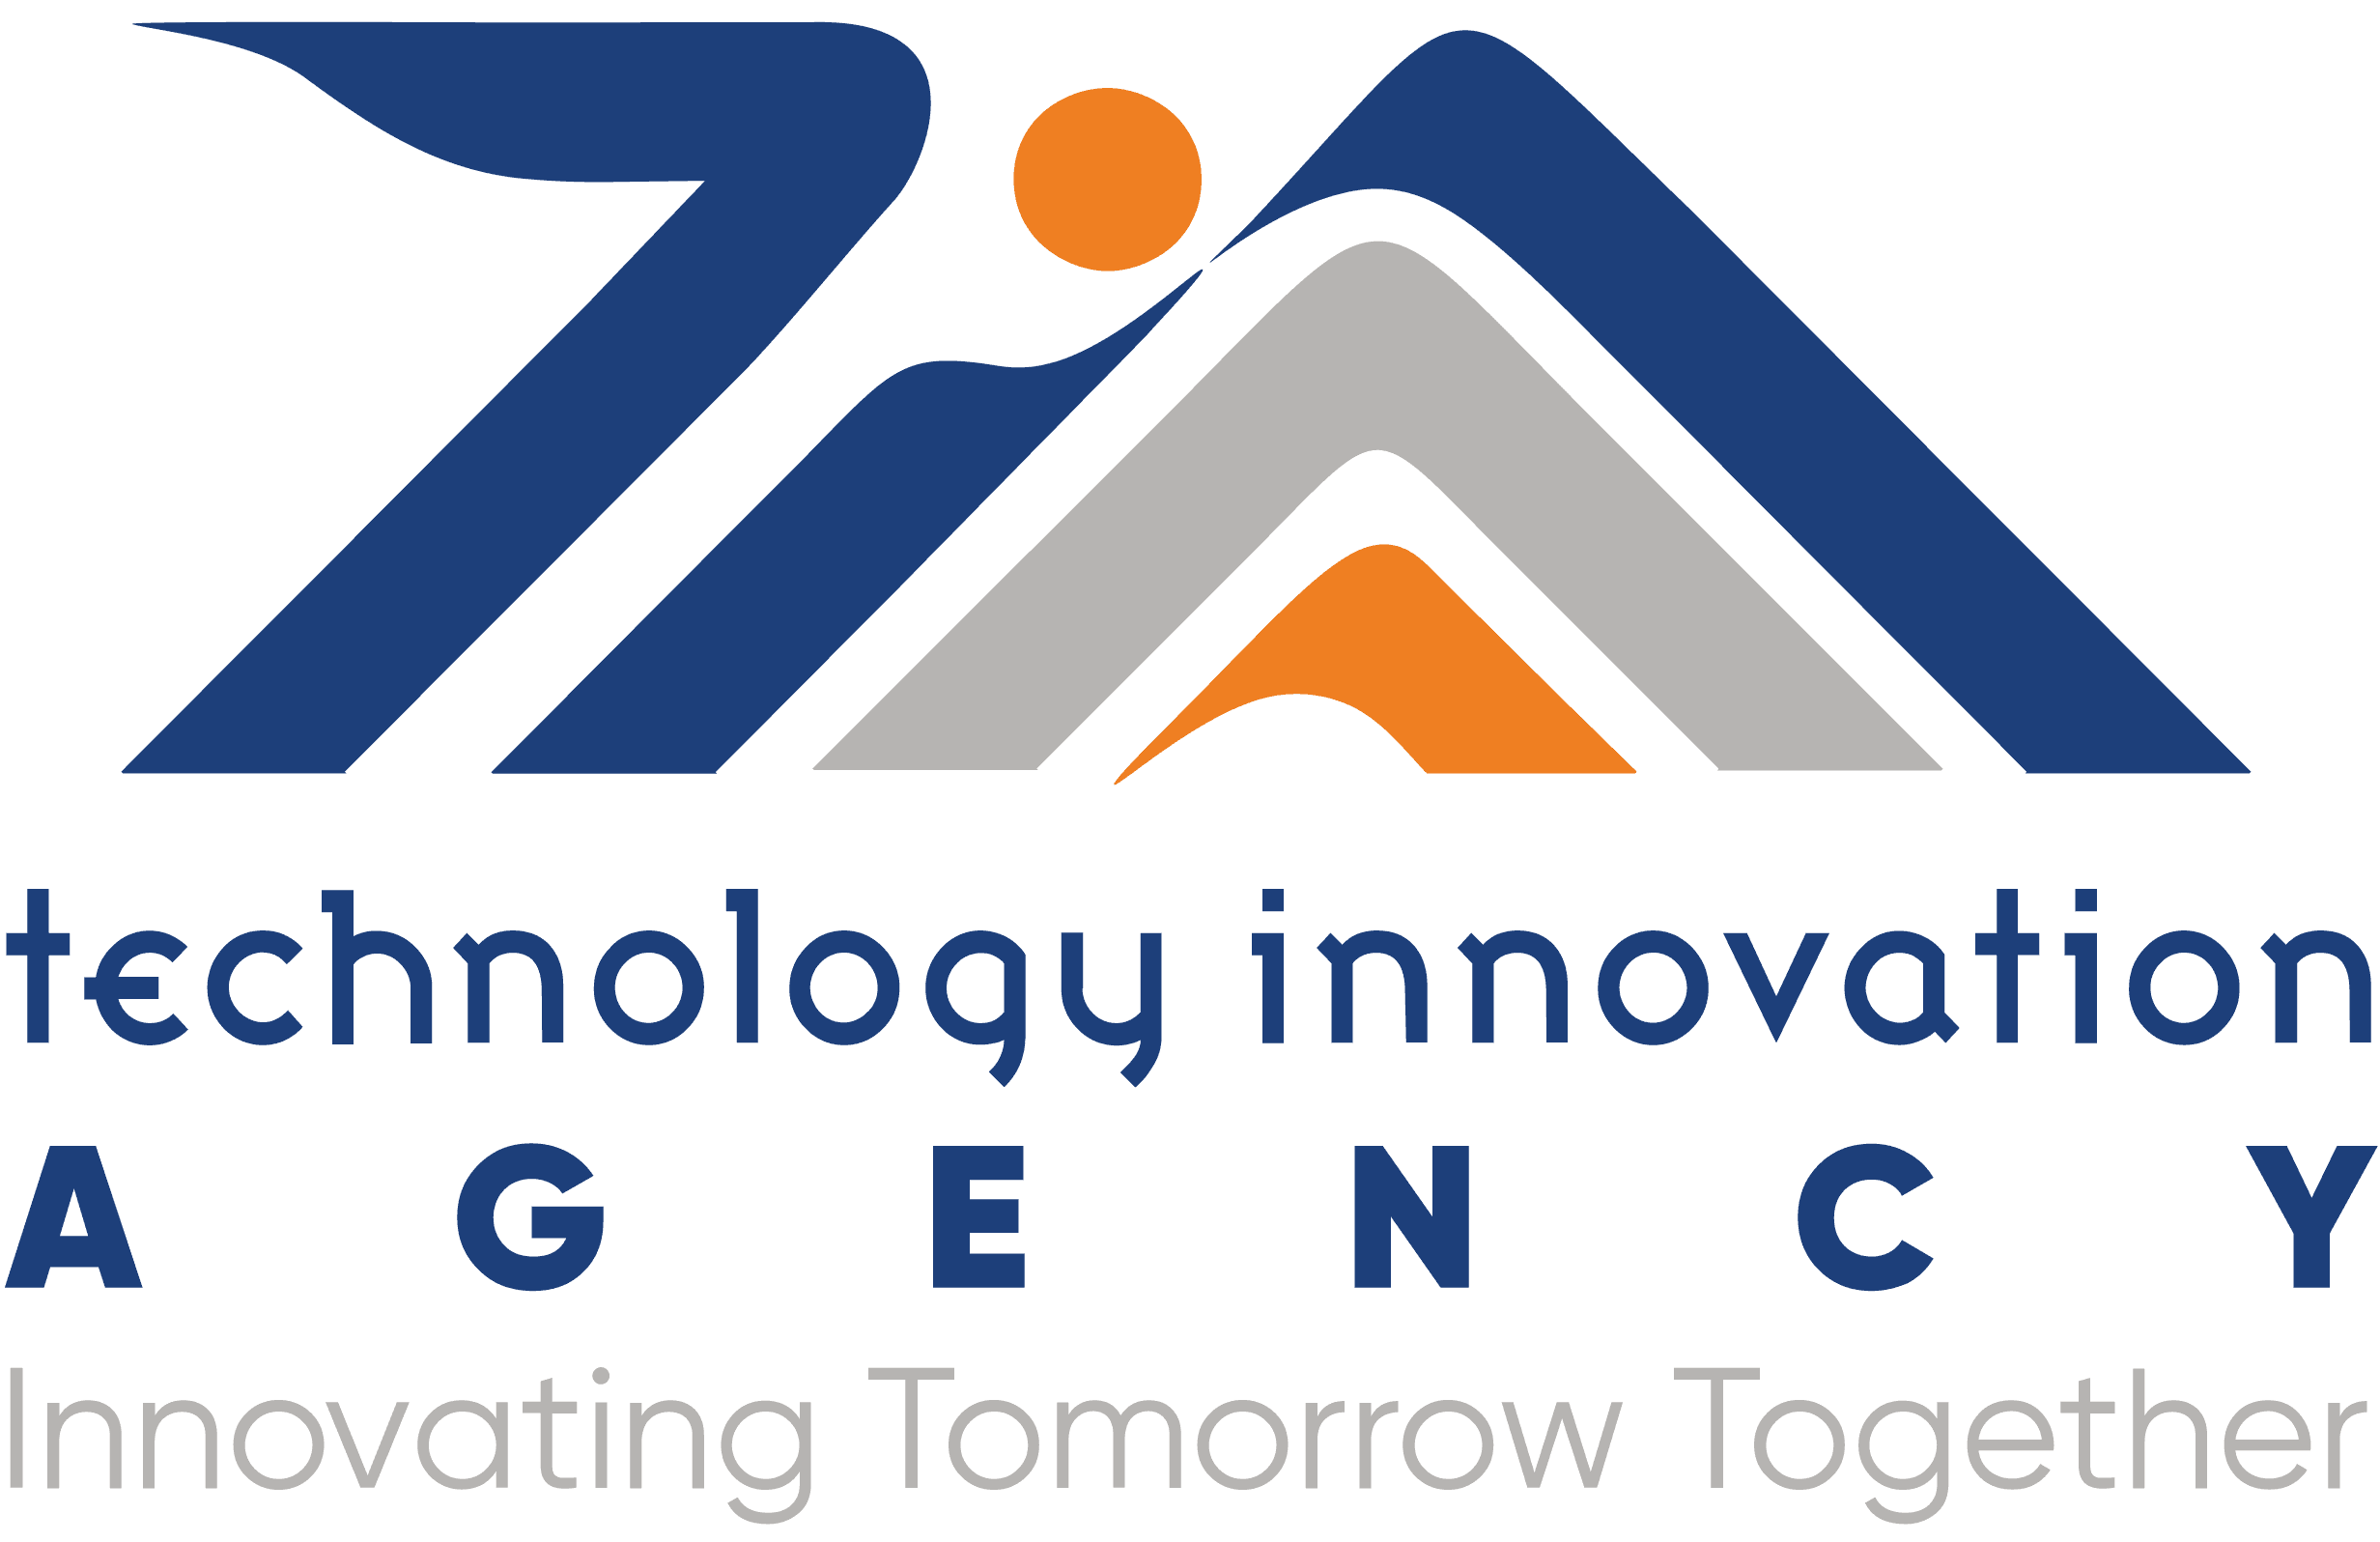 Technology Innovation Agency